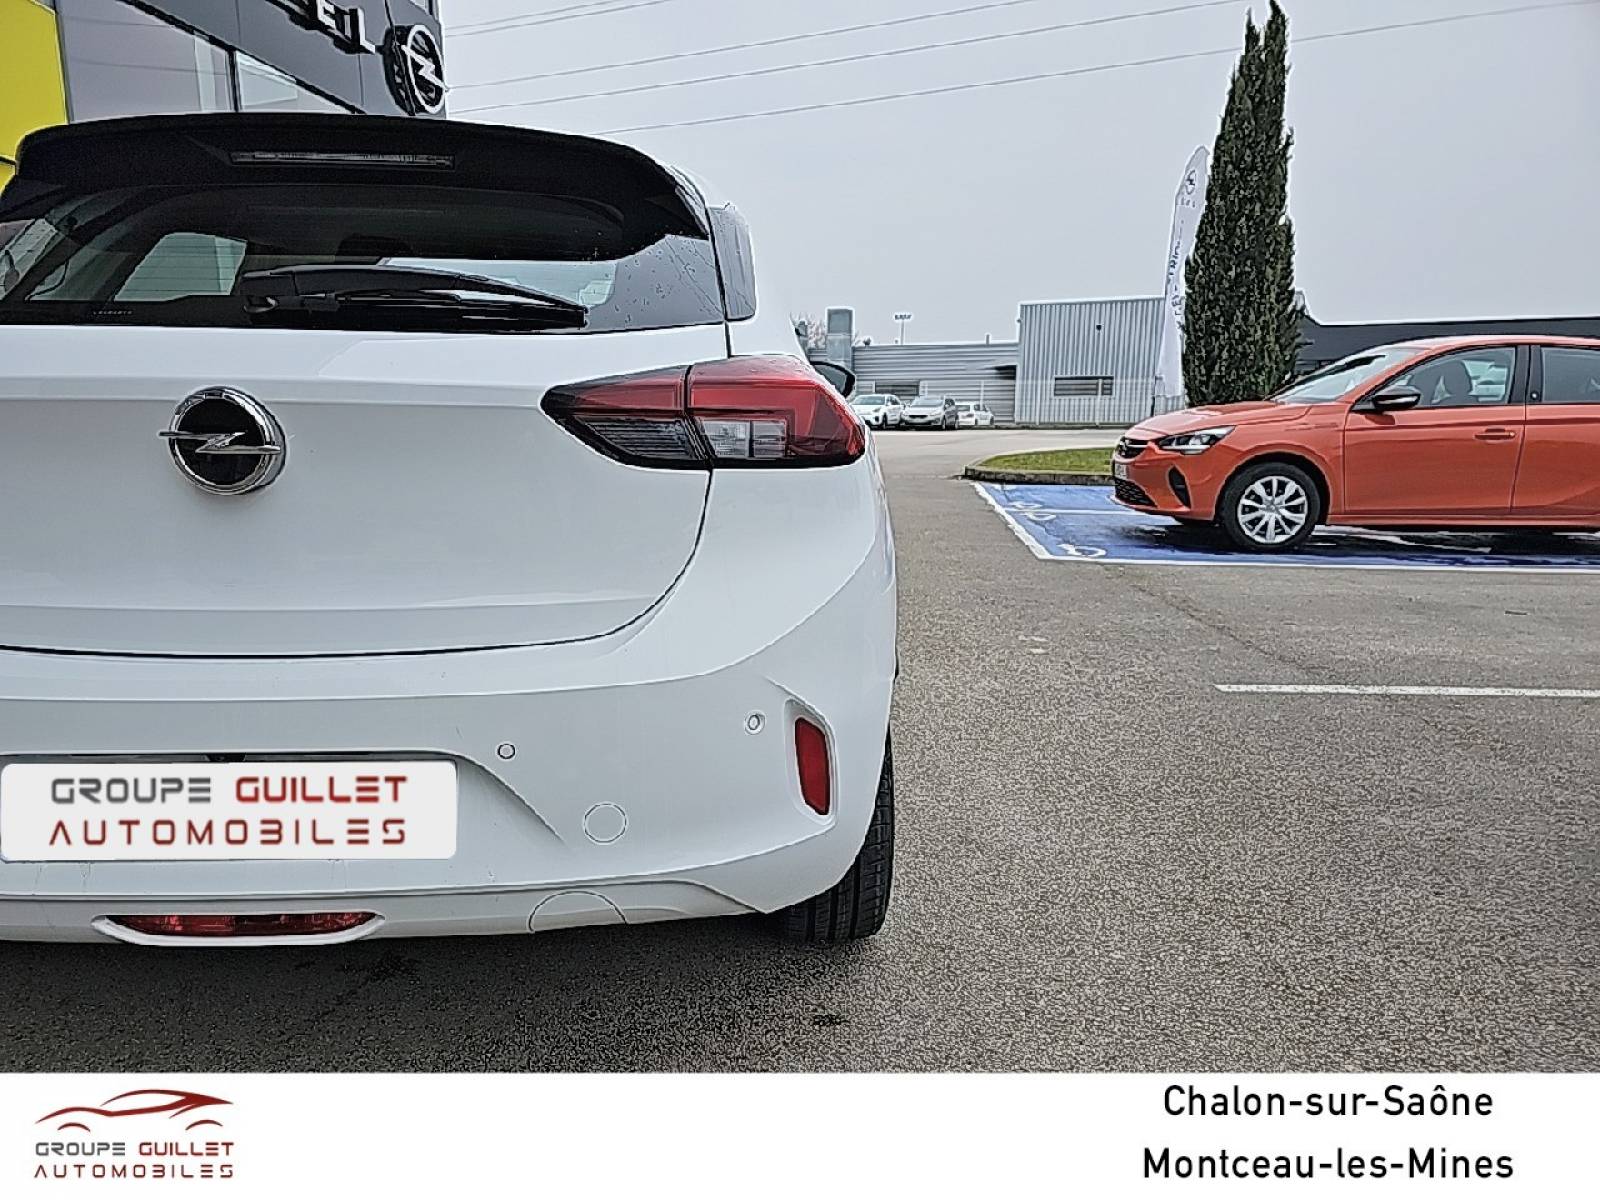 OPEL Corsa Electrique 136 ch & Batterie 50 kWh - véhicule d'occasion - Groupe Guillet - Opel Magicauto Chalon - 71380 - Saint-Marcel - 15